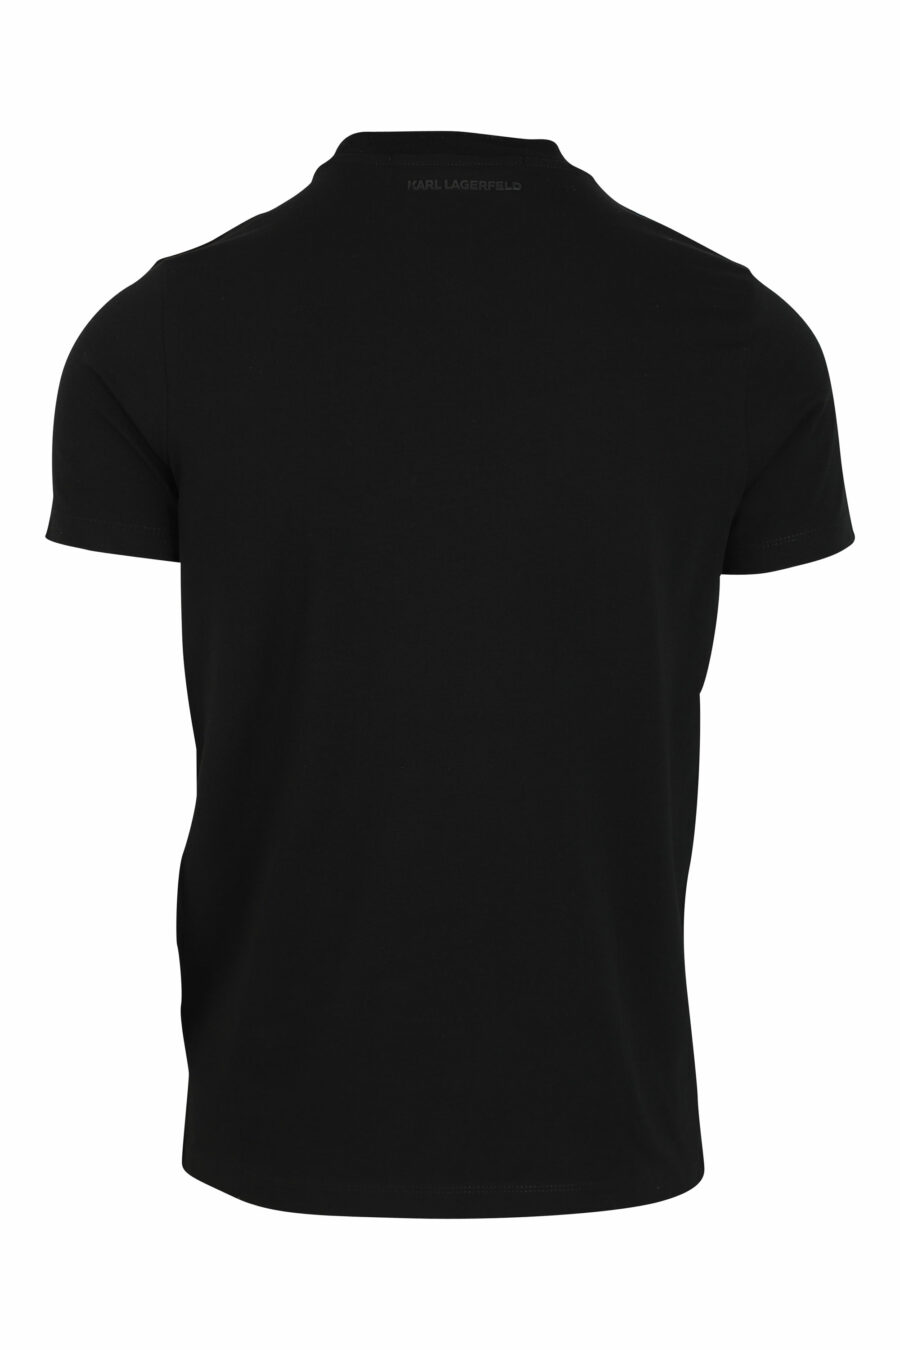 Schwarzes T-Shirt mit Maxilogo in blauer Silhouette - 4062226292504 2